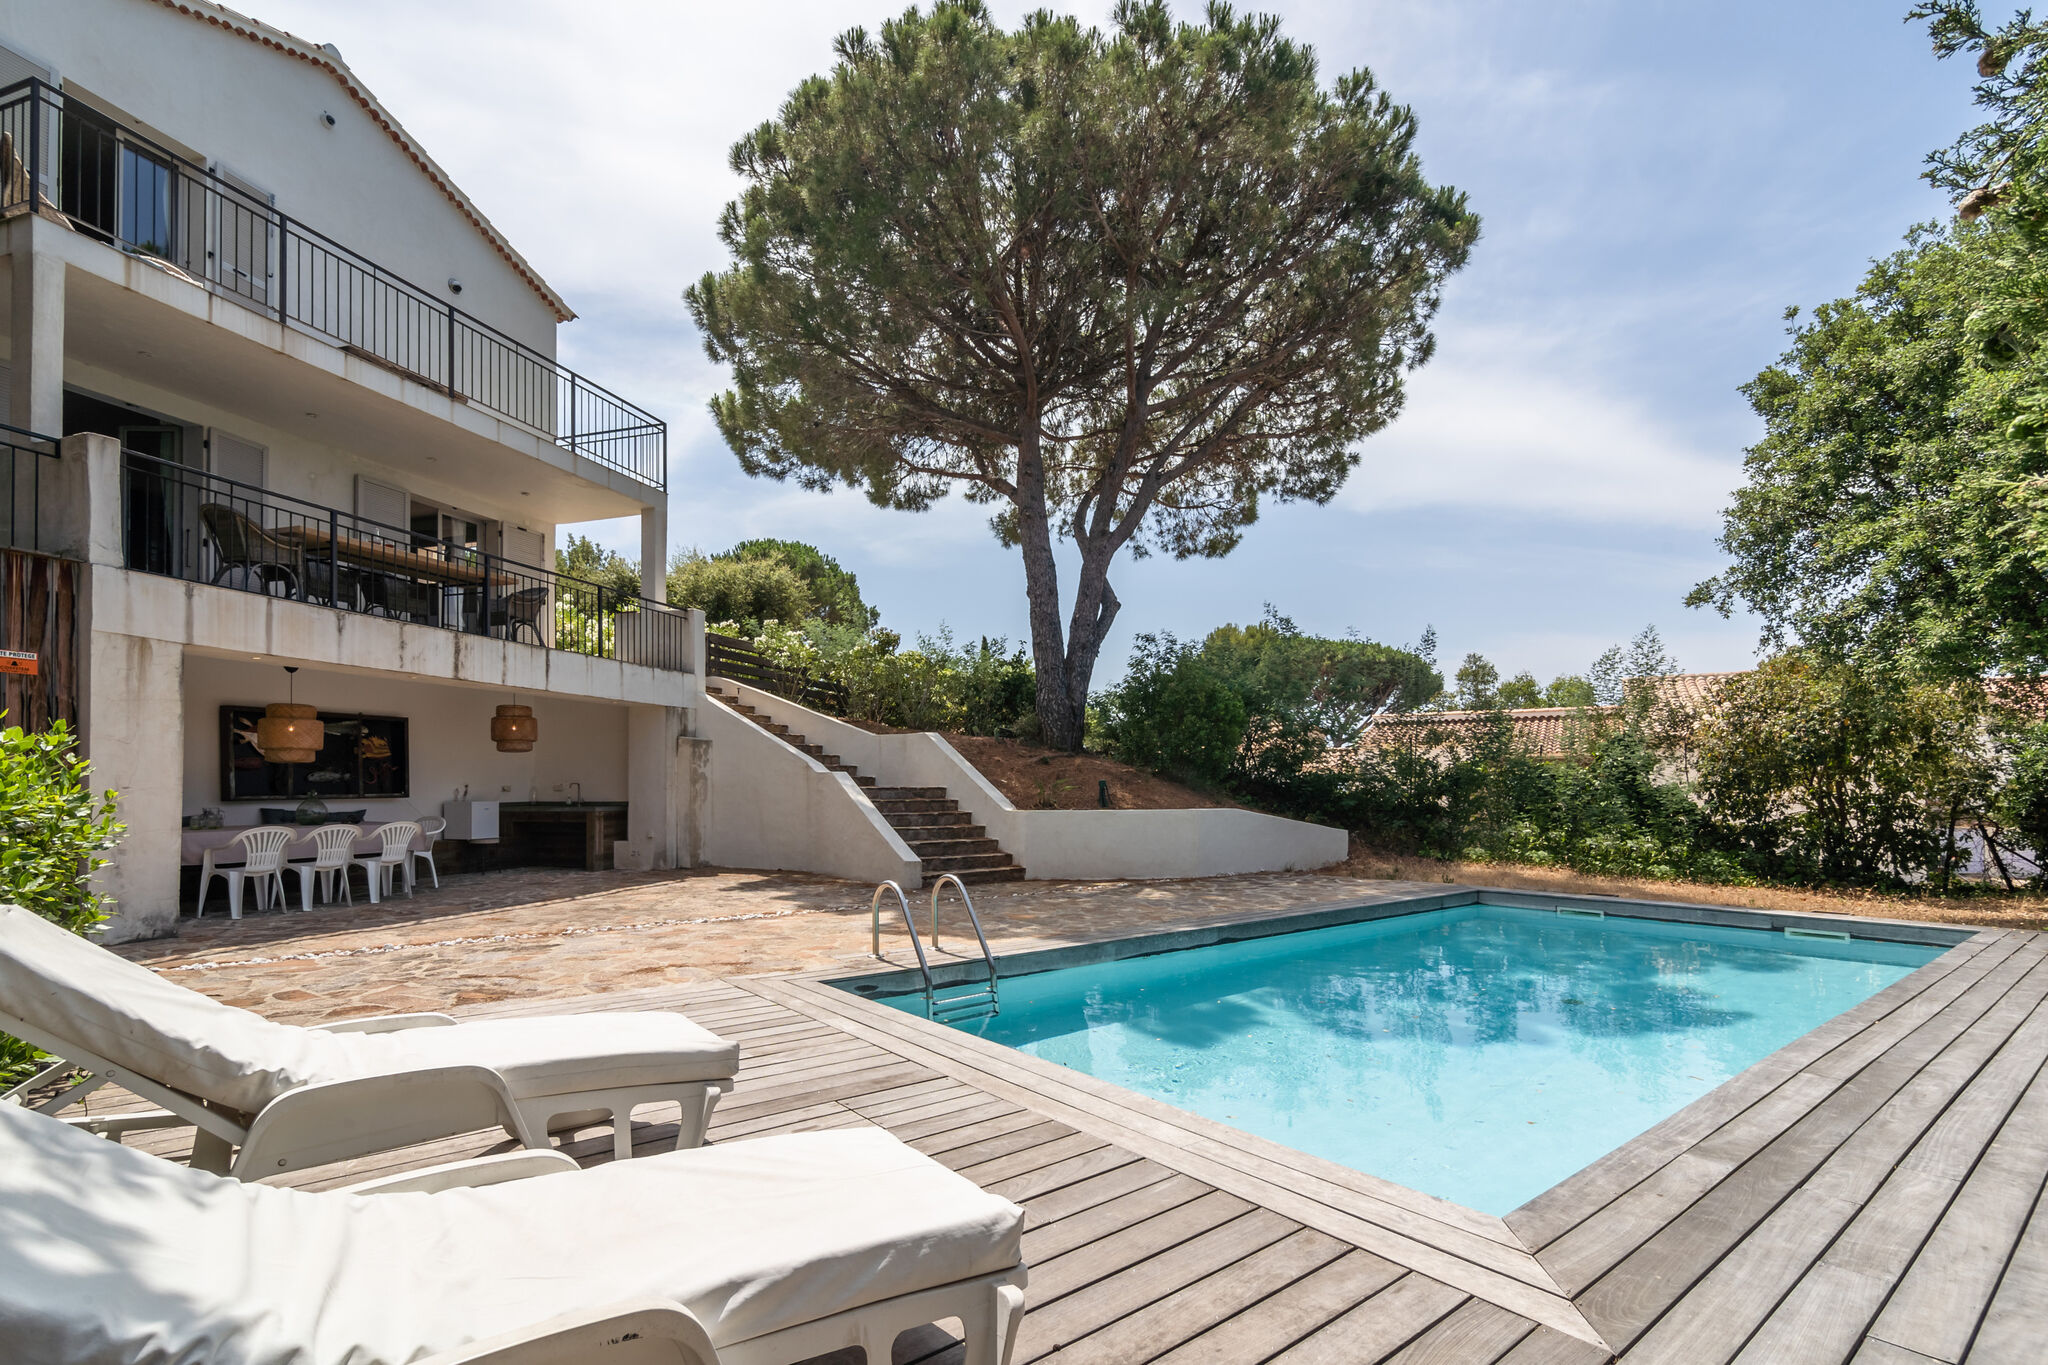 Luxe villa in Provence, Frankrijk met privézwembad